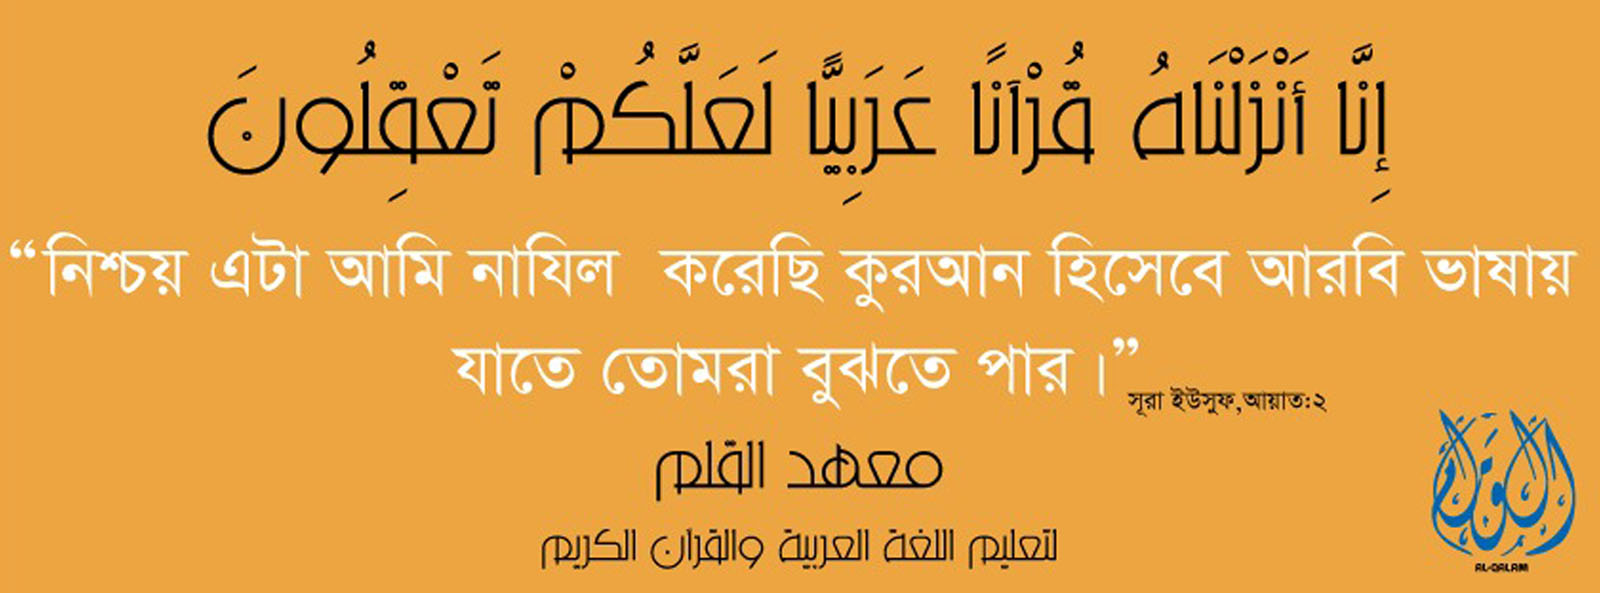 Bangla Banner